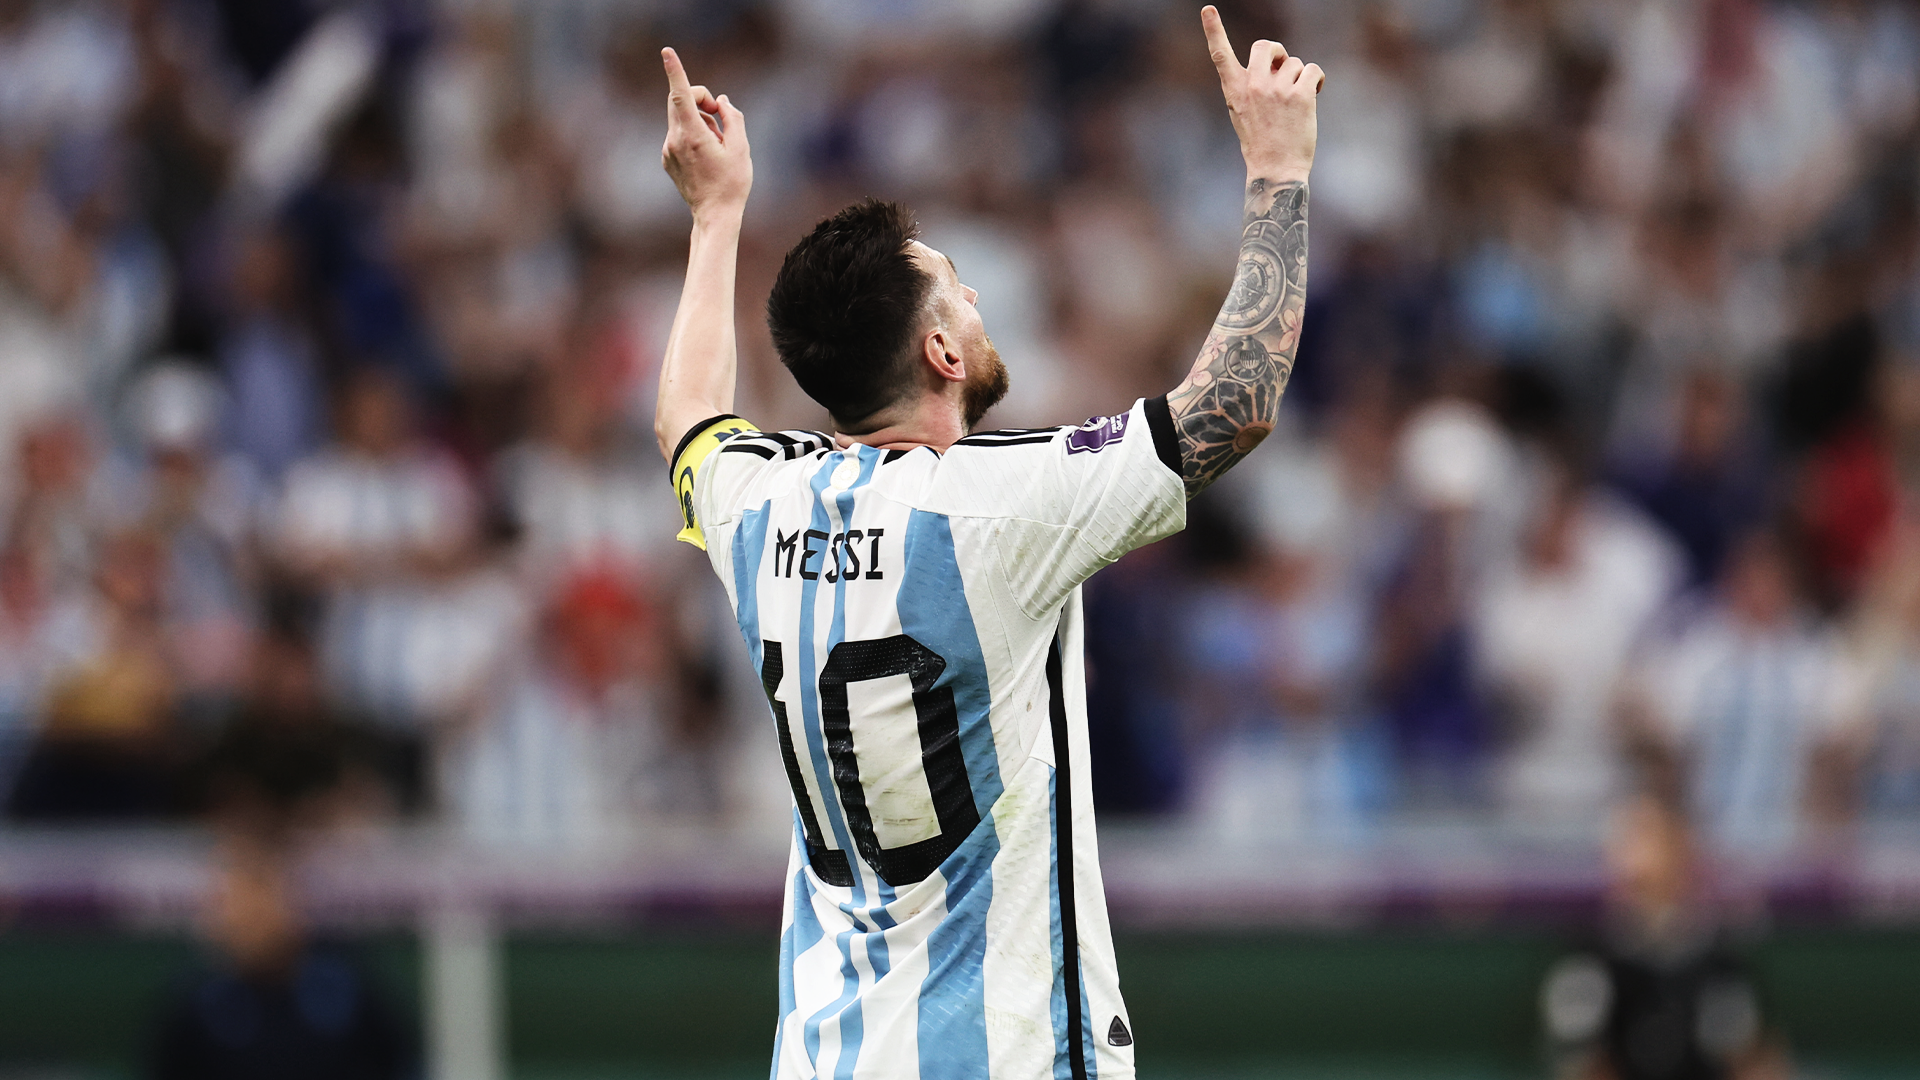 Thử tưởng tượng mình đang mặc chiếc áo đấu của đội tuyển Argentina do Messi thiết kế. Từ đường kẻ trắng xuyên suốt đến màu xanh đặc trưng của Argentina, Messi đã thiết kế một bộ trang phục khiến ai cũng phải mong muốn sở hữu.